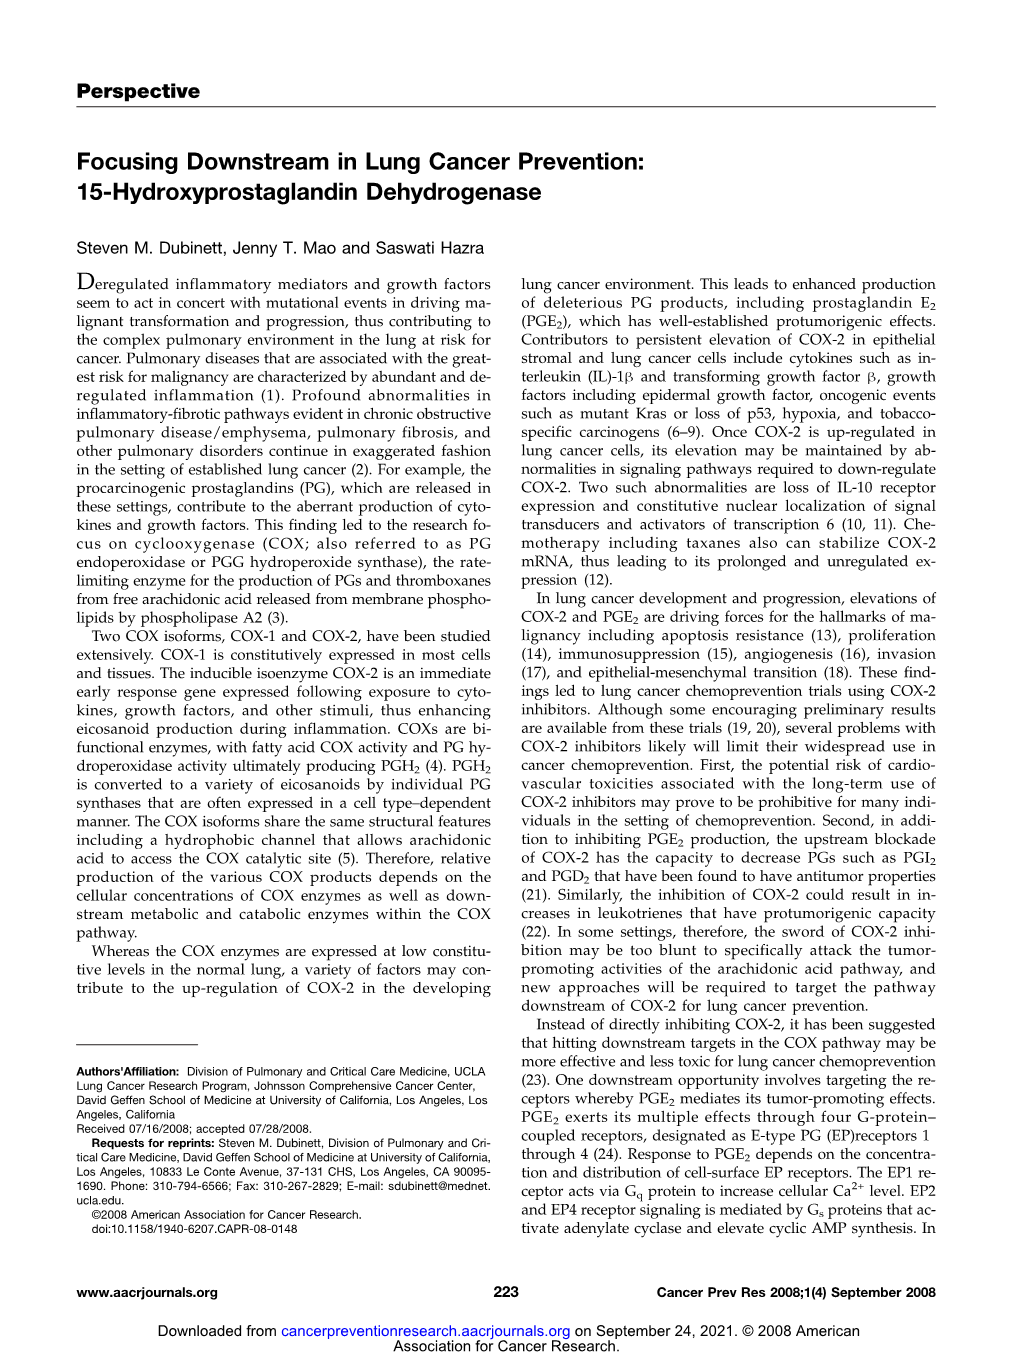 Focusing Downstream in Lung Cancer Prevention: 15-Hydroxyprostaglandin Dehydrogenase